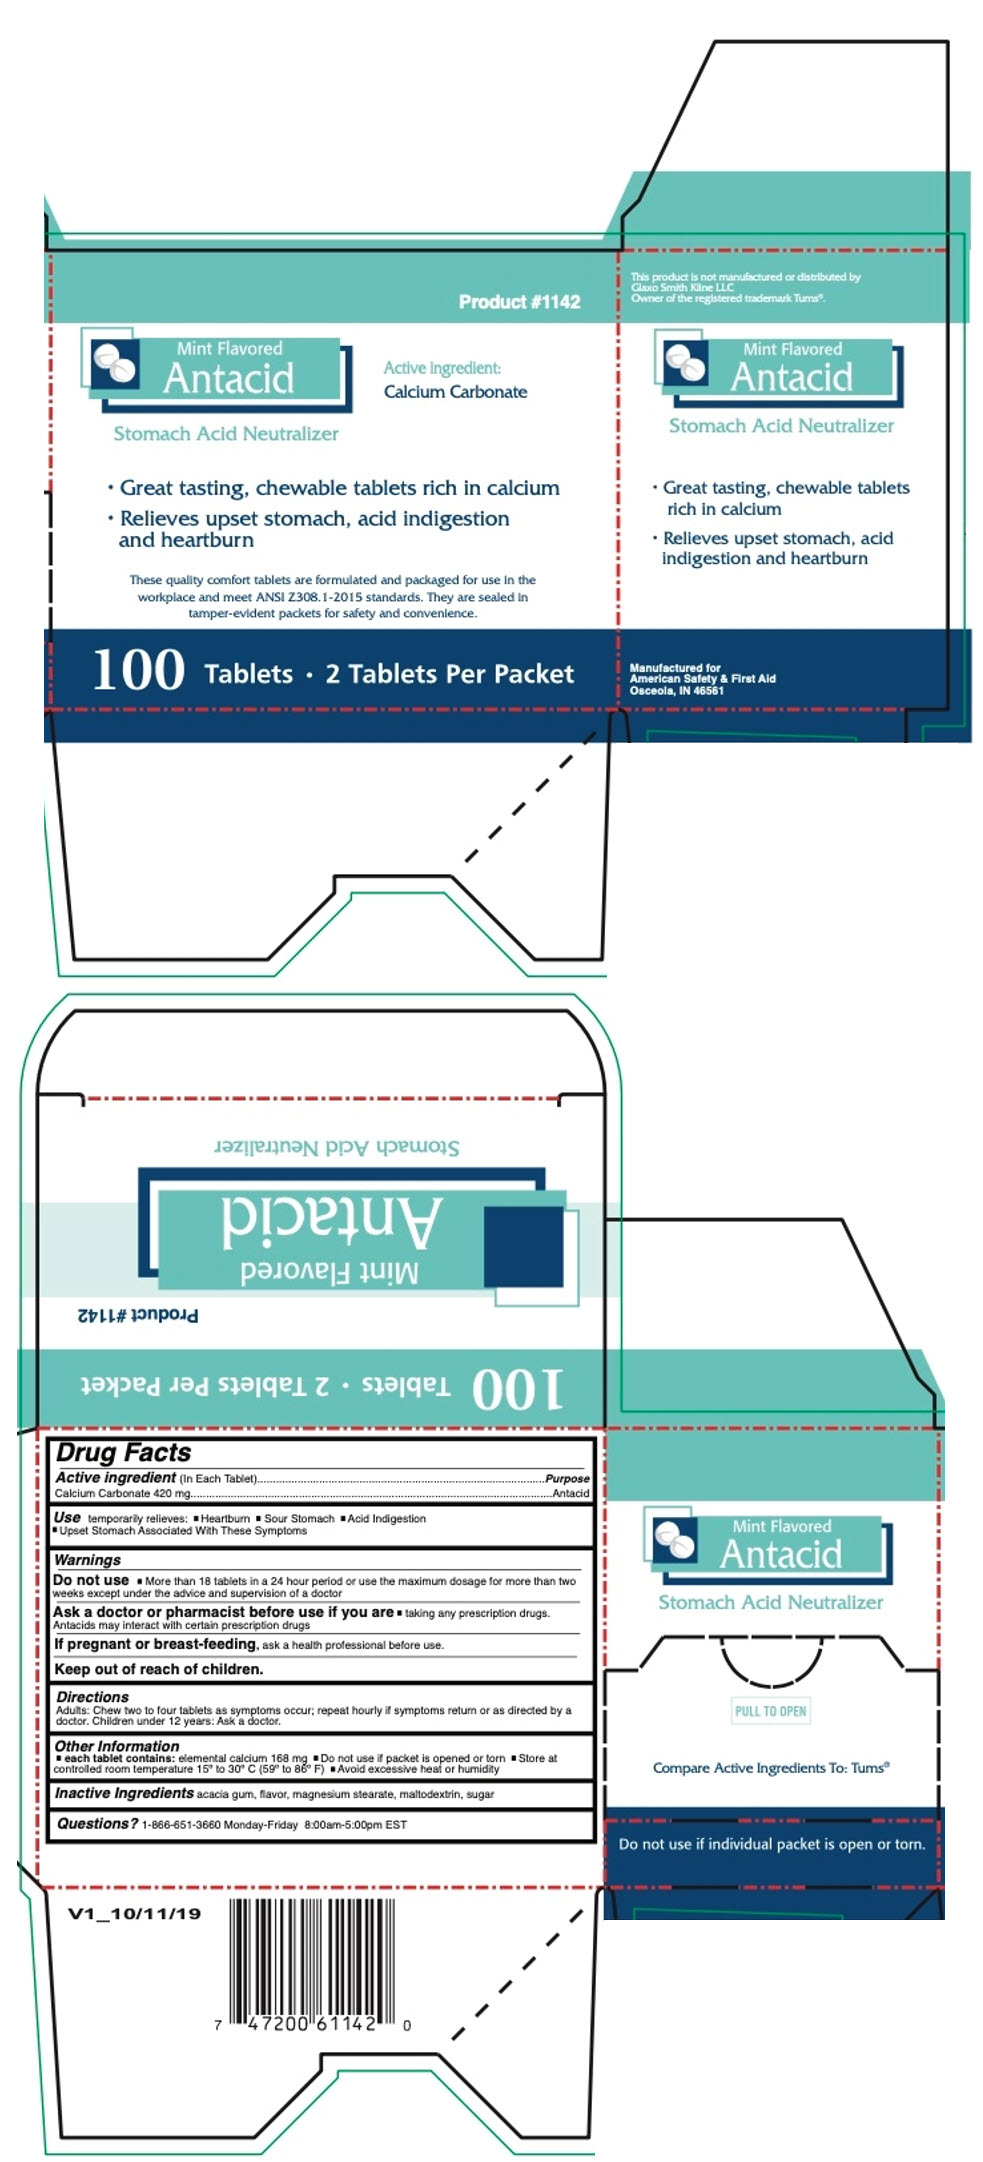 PRINCIPAL DISPLAY PANEL - 100 Tablet Box